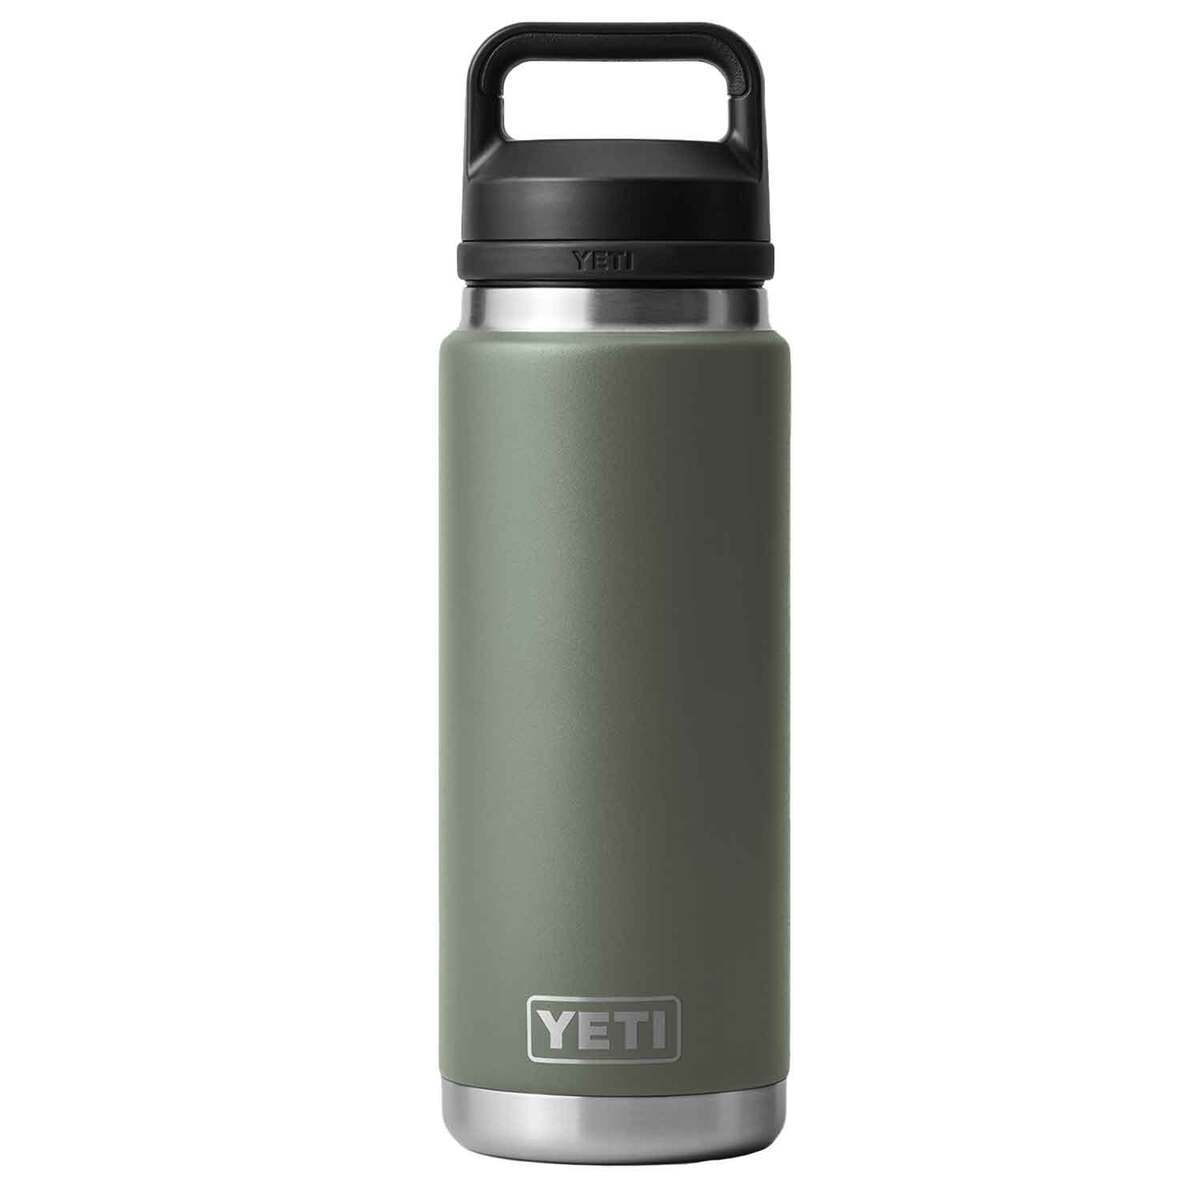 https://www.sportsmans.com/medias/yeti-rambler-26oz-insulated-bottle-with-chug-cap-camp-green-1825943-1.jpg?context=bWFzdGVyfGltYWdlc3wyNzM2NXxpbWFnZS9qcGVnfGg5NS9oZDQvMTE0ODkyNTI3MzcwNTQvMTIwMC1jb252ZXJzaW9uRm9ybWF0X2Jhc2UtY29udmVyc2lvbkZvcm1hdF9zbXctMTgyNTk0My0xLmpwZ3wxNTlhN2FiMmYyN2FiNzNkMTJiNGY3NzZlN2YwNGI1YjQwZjEwZDY3OWJiNTRmNDdjMzI5YWFlMzIwNDdiMWE0